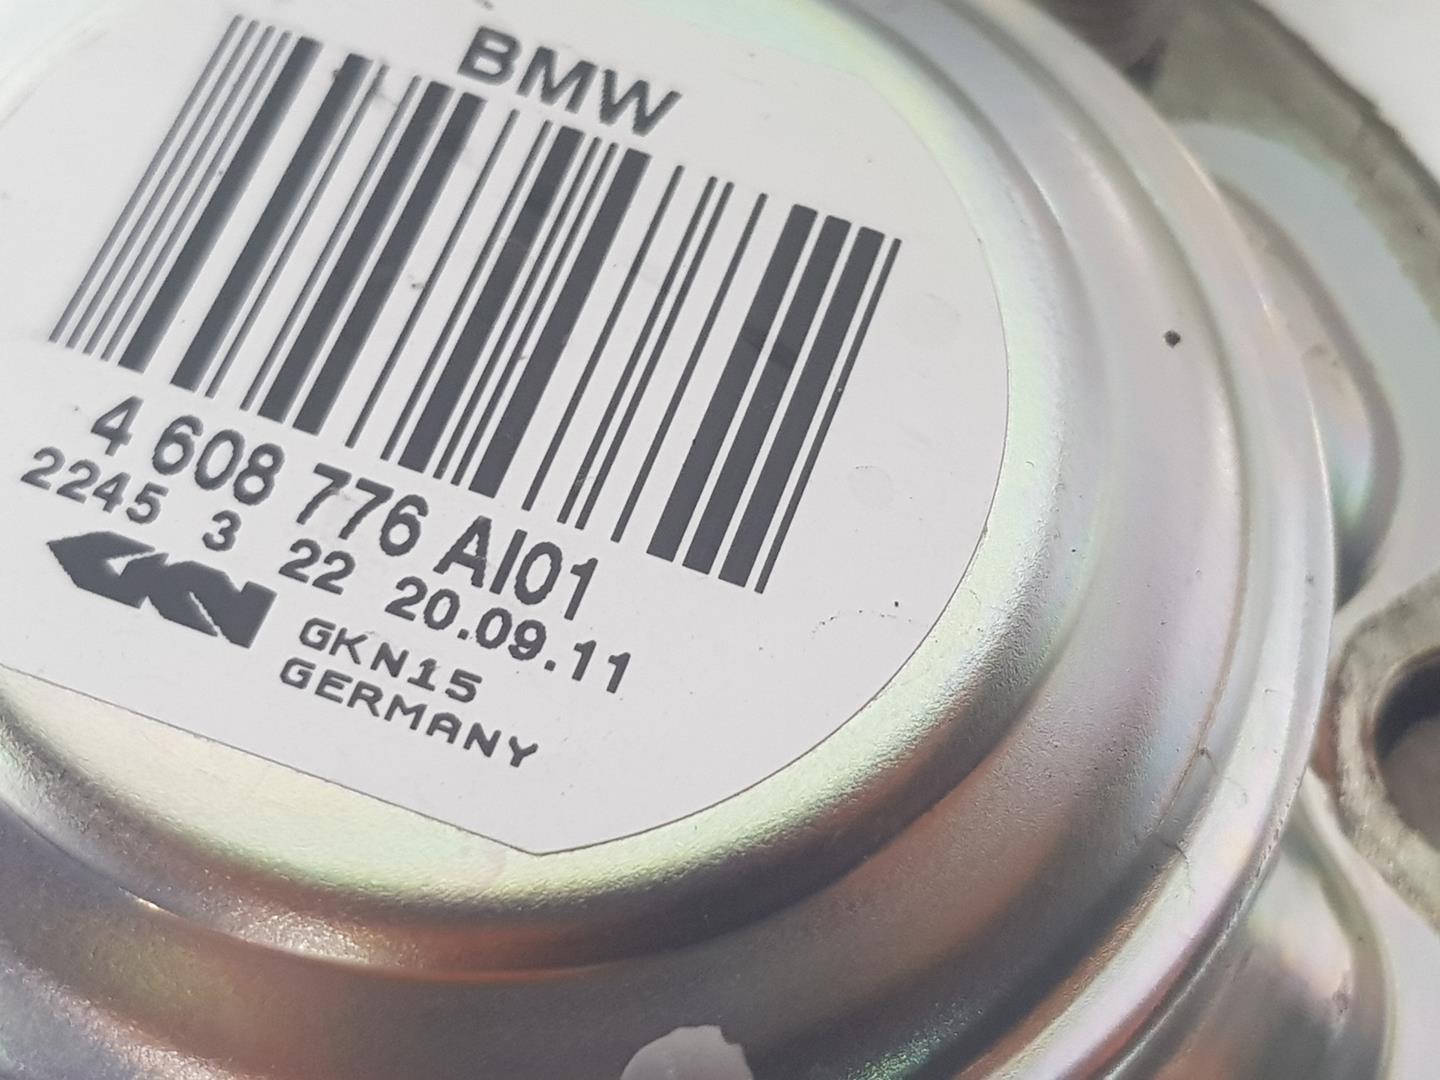 BMW X1 E84 (2009-2015) Galinis dešinys pusašis 4608776, 33207605486 23894713